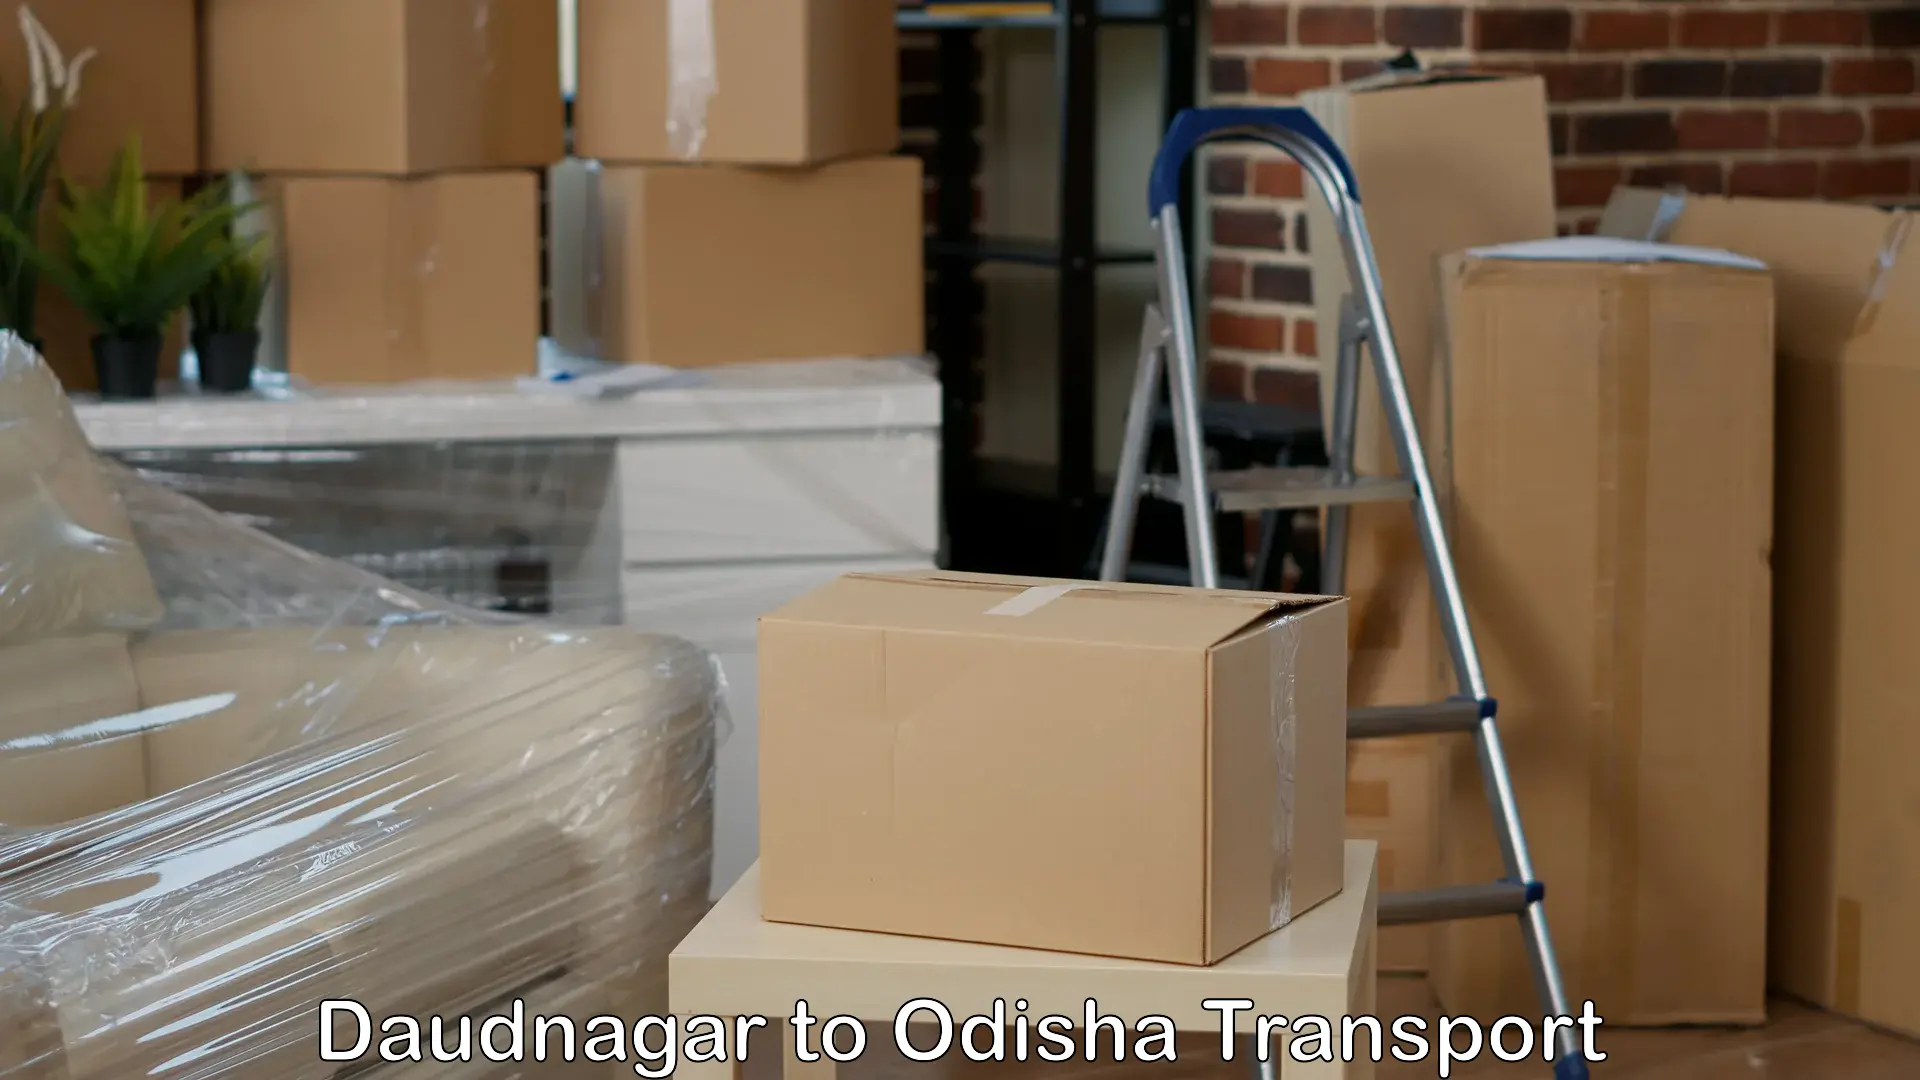 Furniture transport service Daudnagar to Mathili